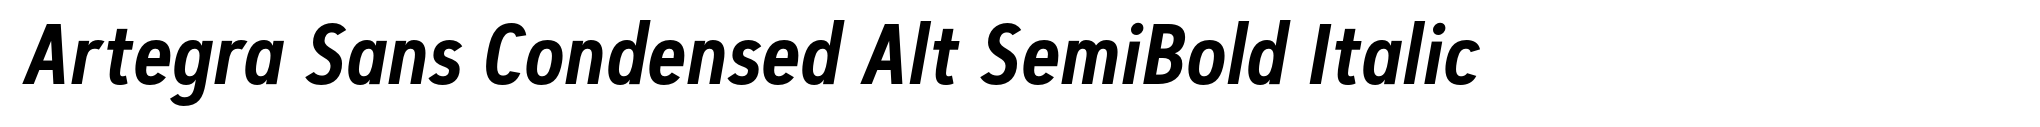 Artegra Sans Condensed Alt SemiBold Italic image